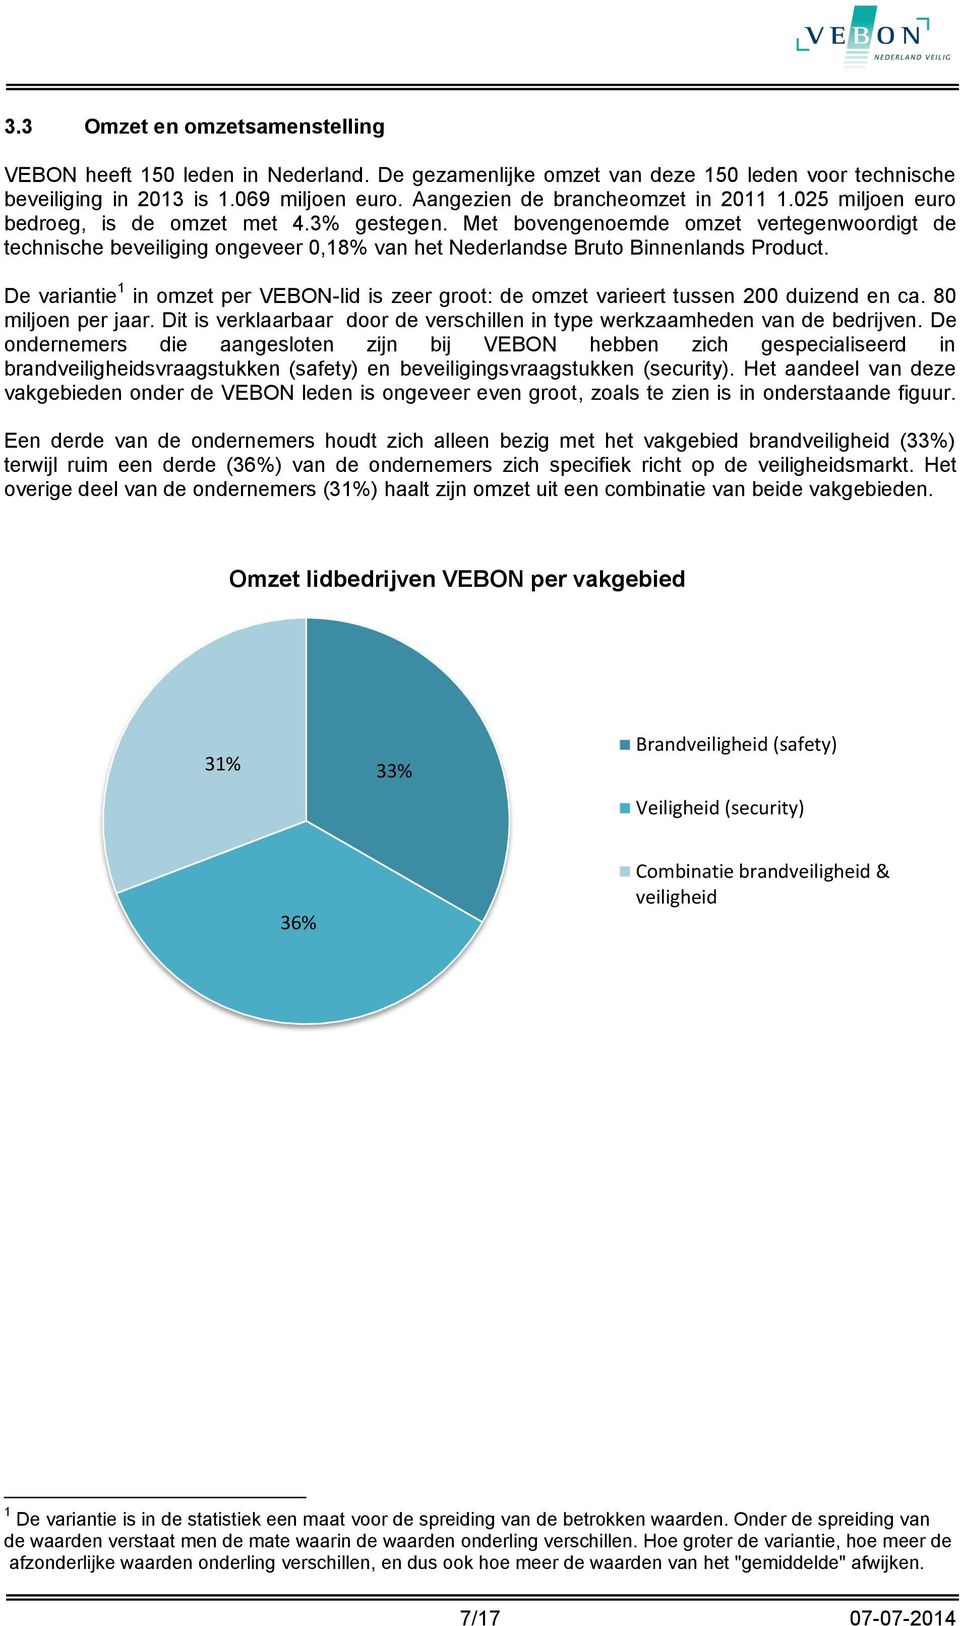 Met bovengenoemde omzet vertegenwoordigt de technische beveiliging ongeveer 0,18% van het Nederlandse Bruto Binnenlands Product.